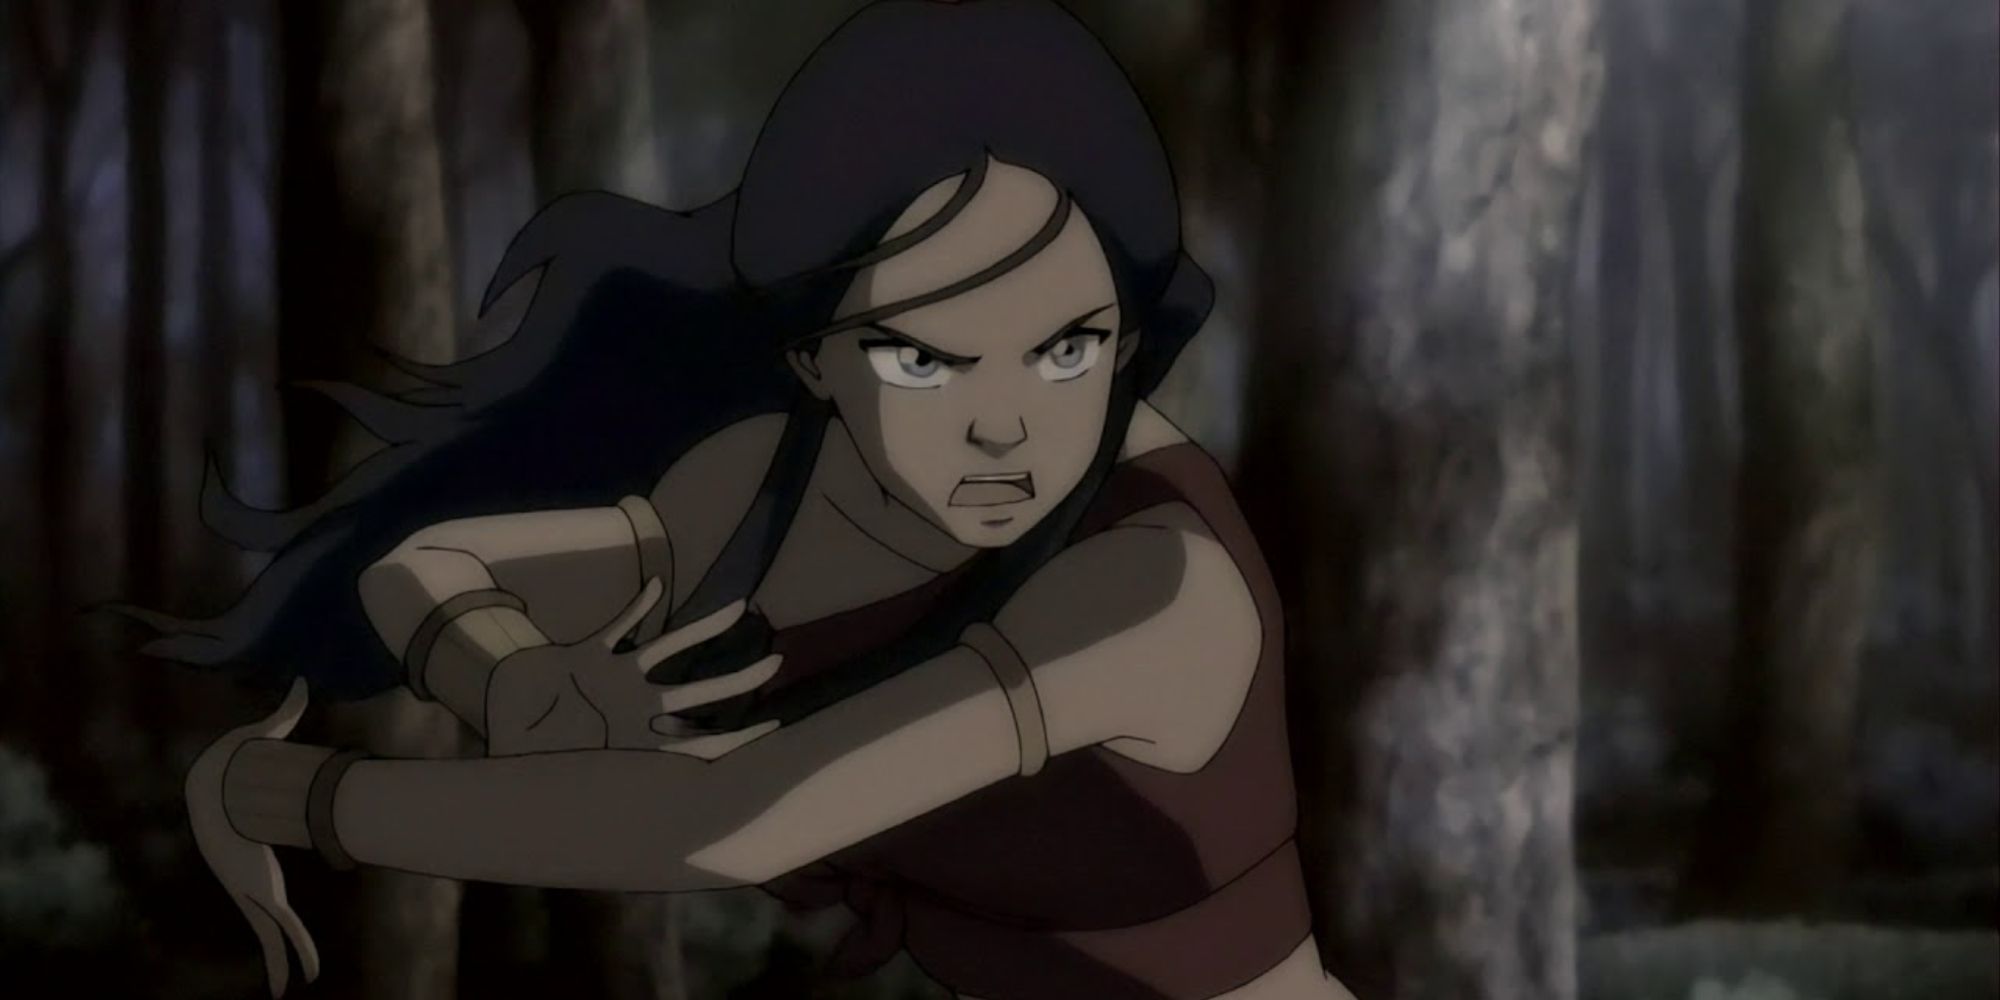  Katara bloodbending in Avatar: The Last Airbender.